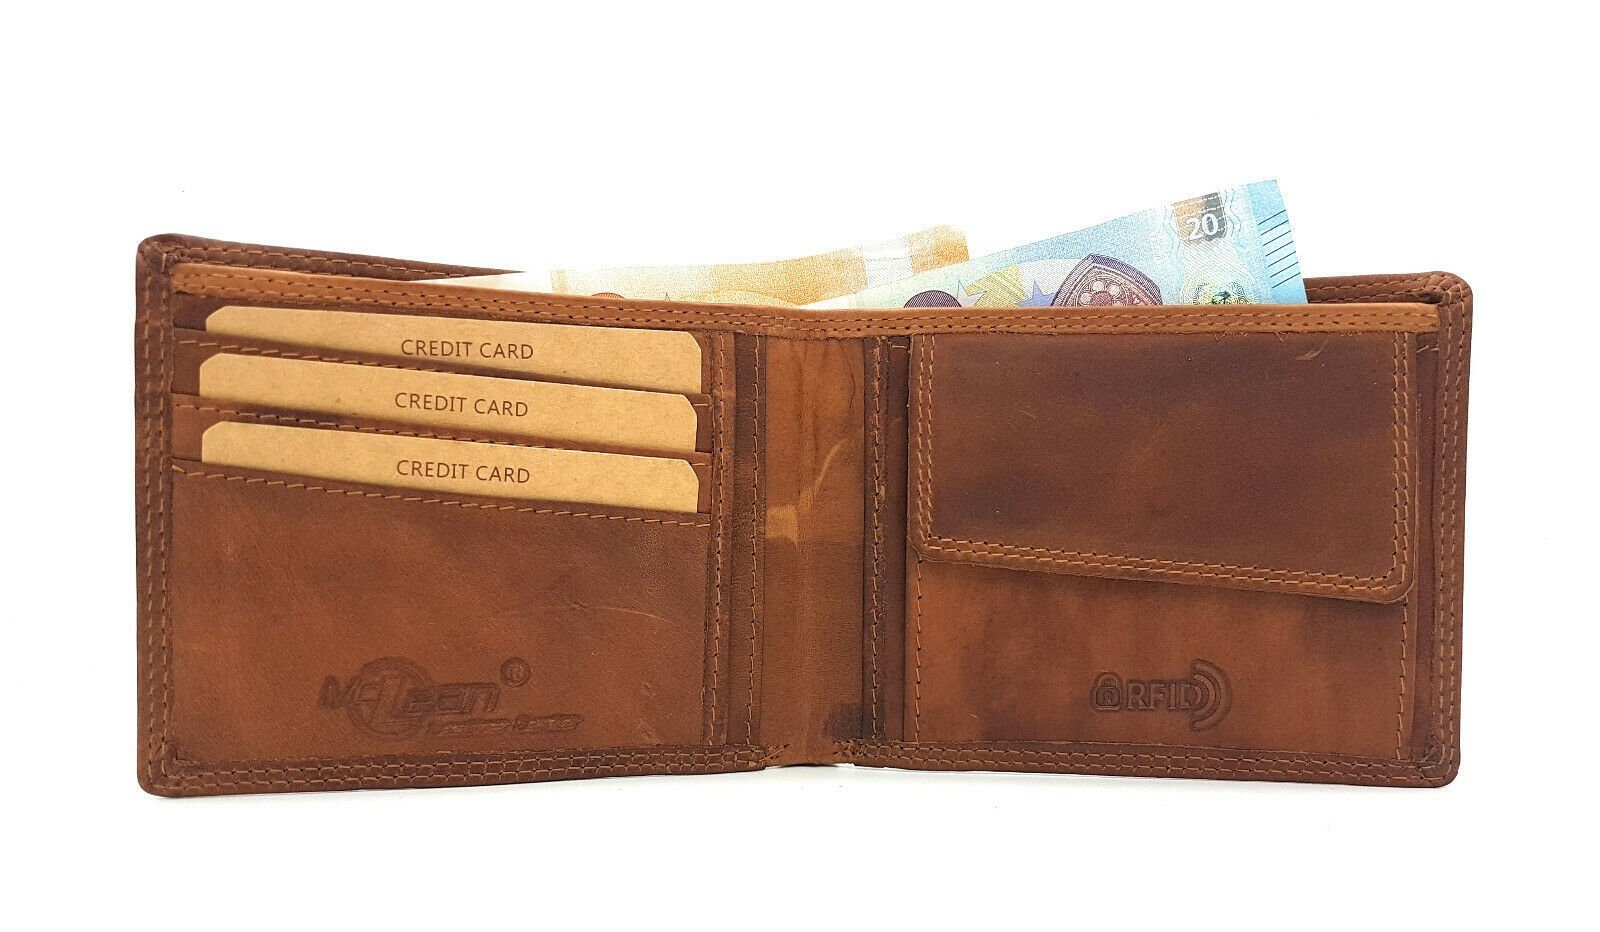 McLean Büffel echt Geldbörse Leder Schutz, mit RFID flach, Portemonnaie Voll-Leder